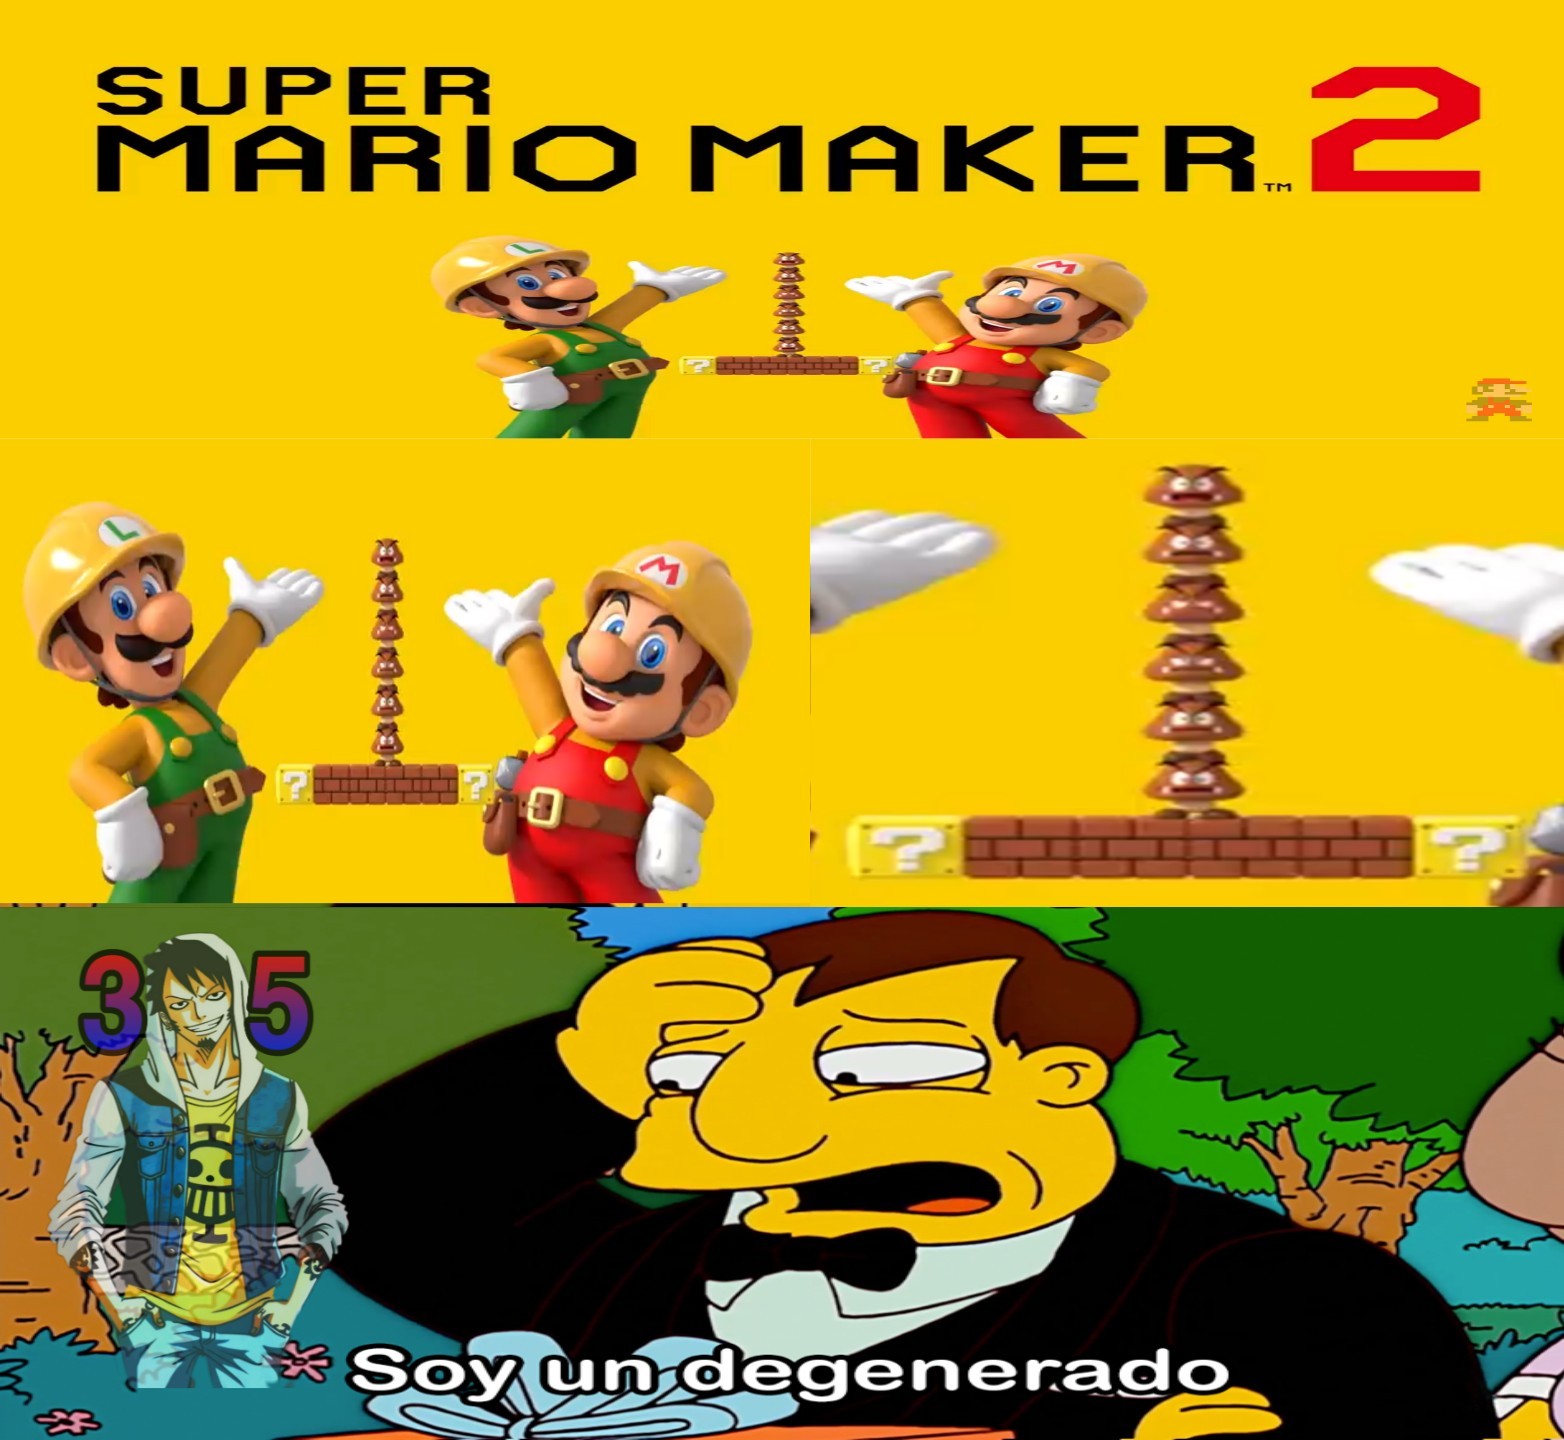 Quien más esta hypeado por el Mario Maker 2 ? - meme